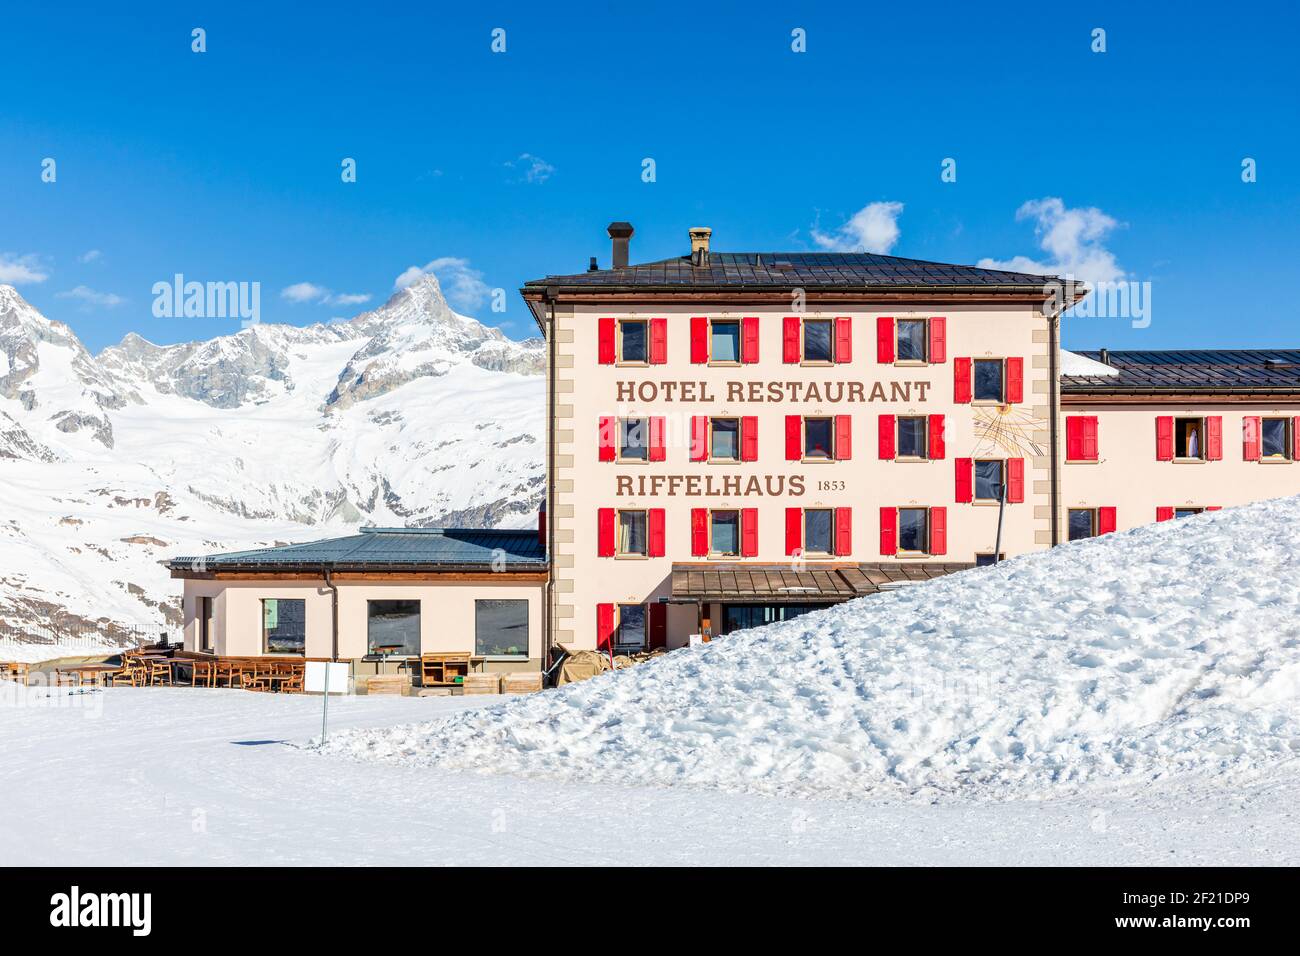 Hotel and restaurant Riffelhaus, Zermatt, Valais, Switzerland Stock Photo